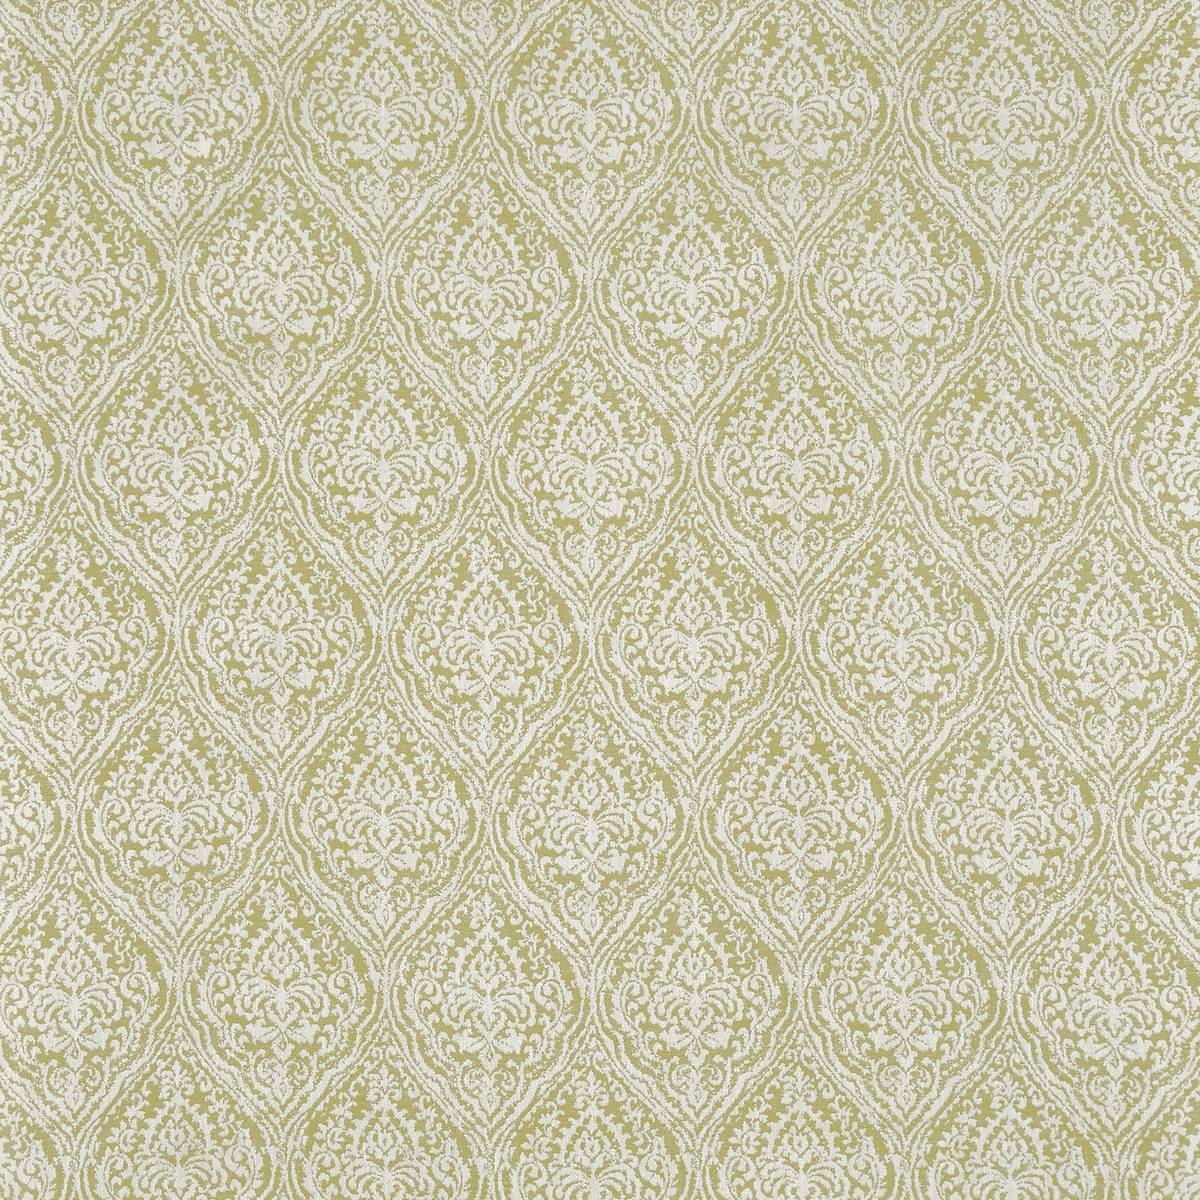 Rosemoor Zest Fabric by Prestigious Textiles